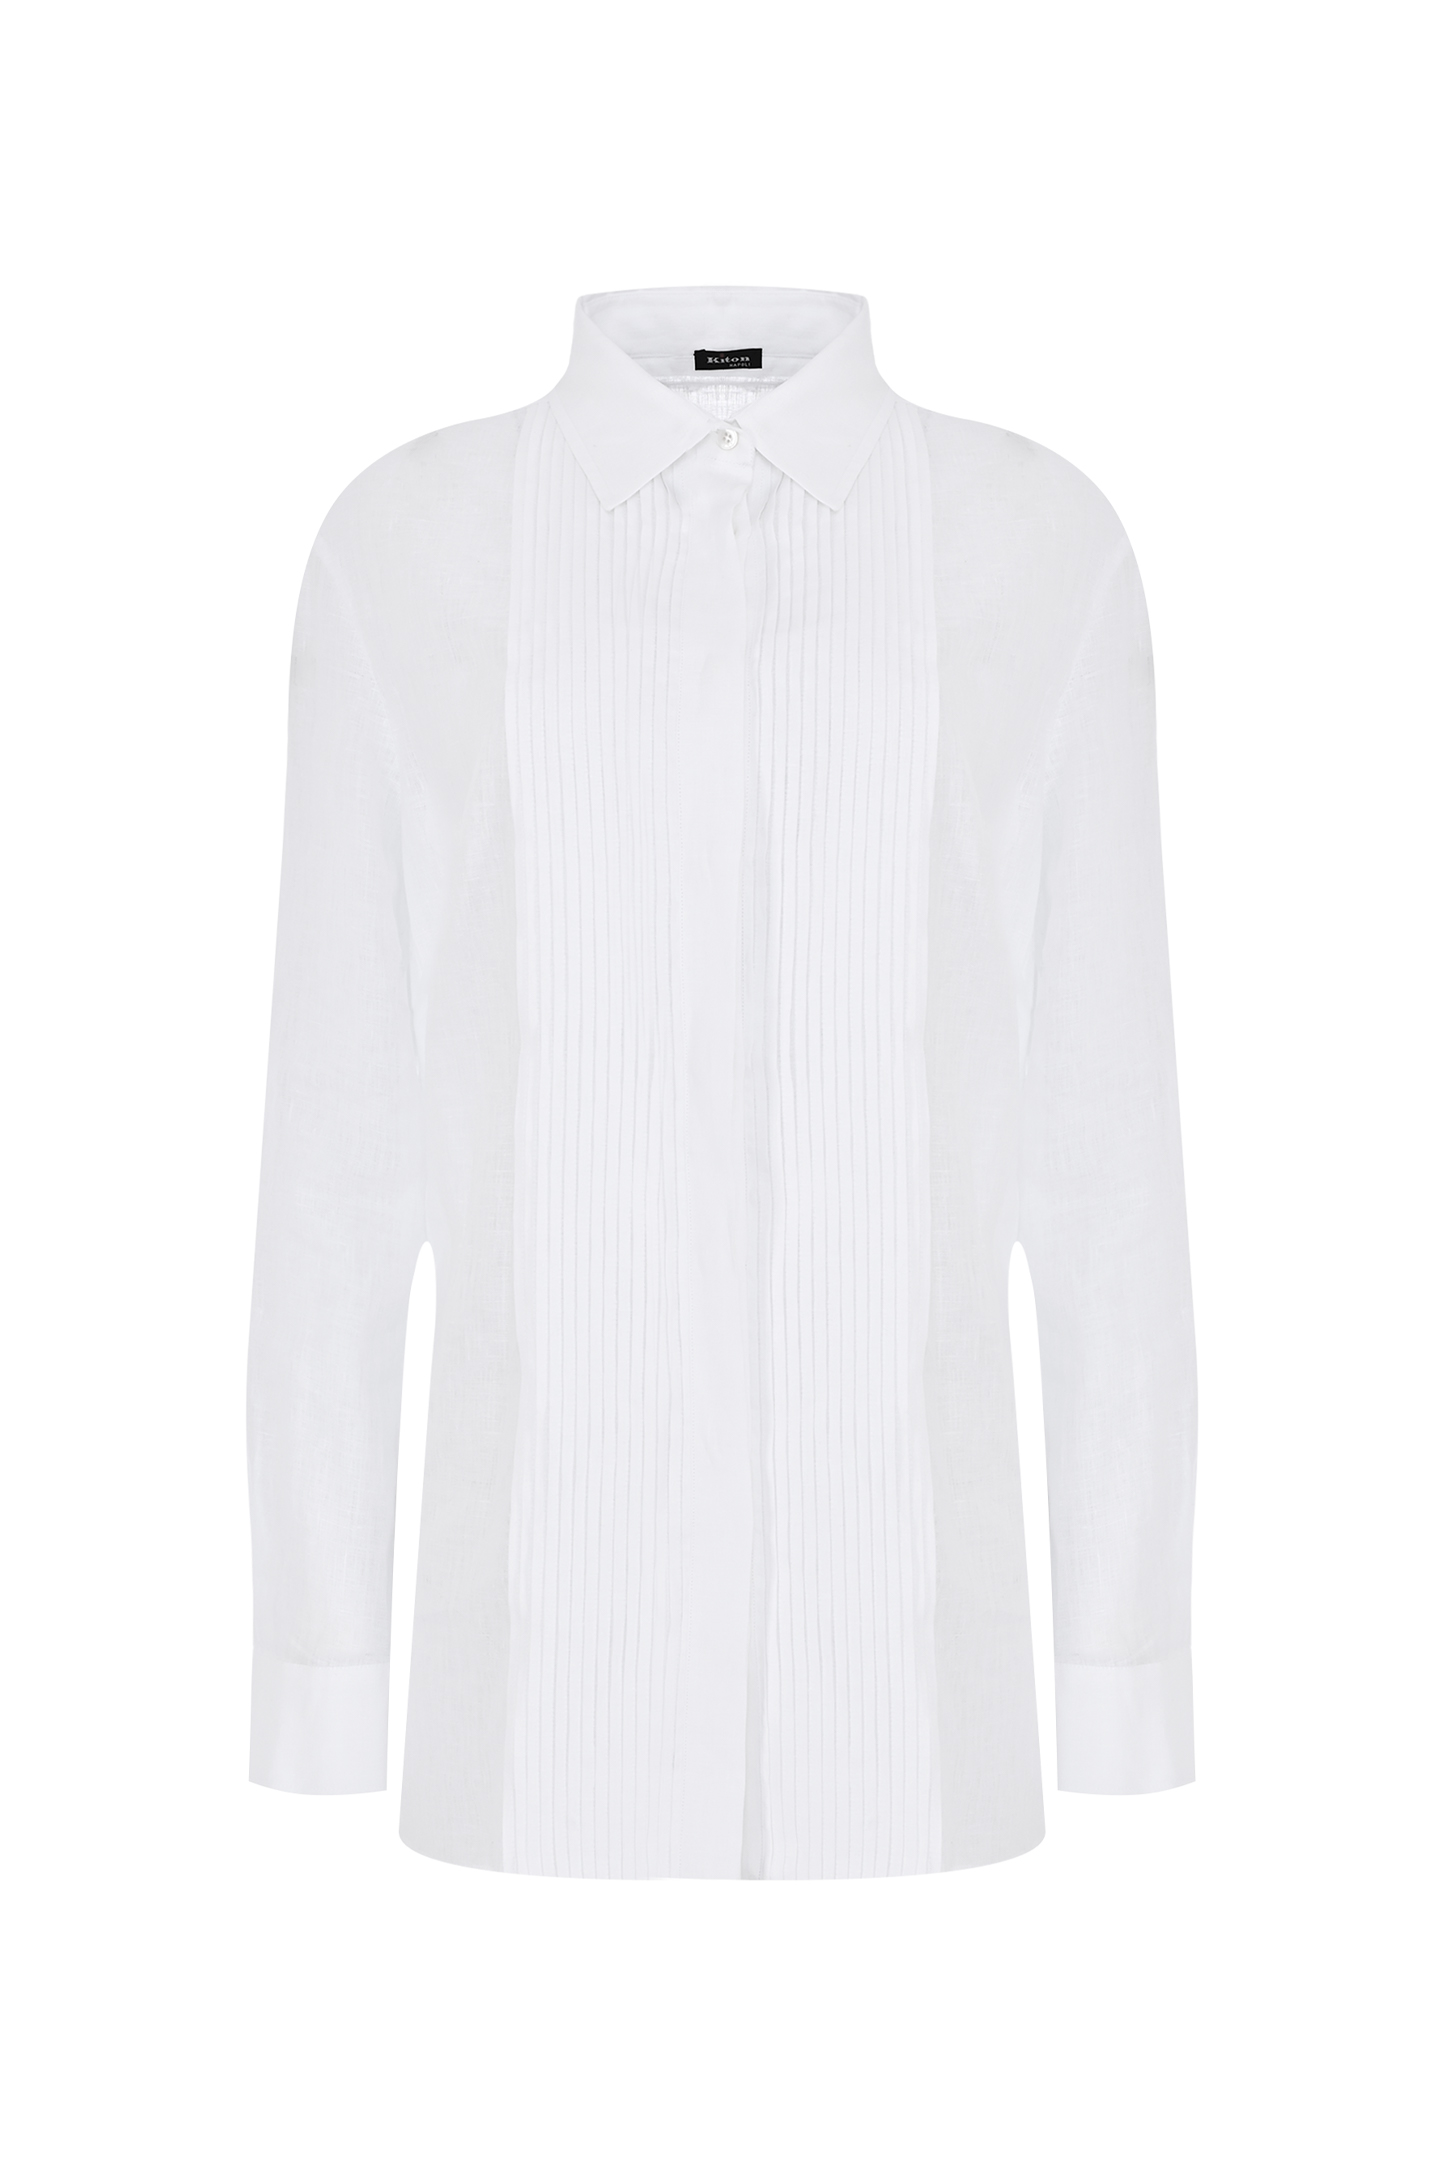 Льняная рубашка с плиссировкой KITON D49405H062070, цвет: Белый, Женский